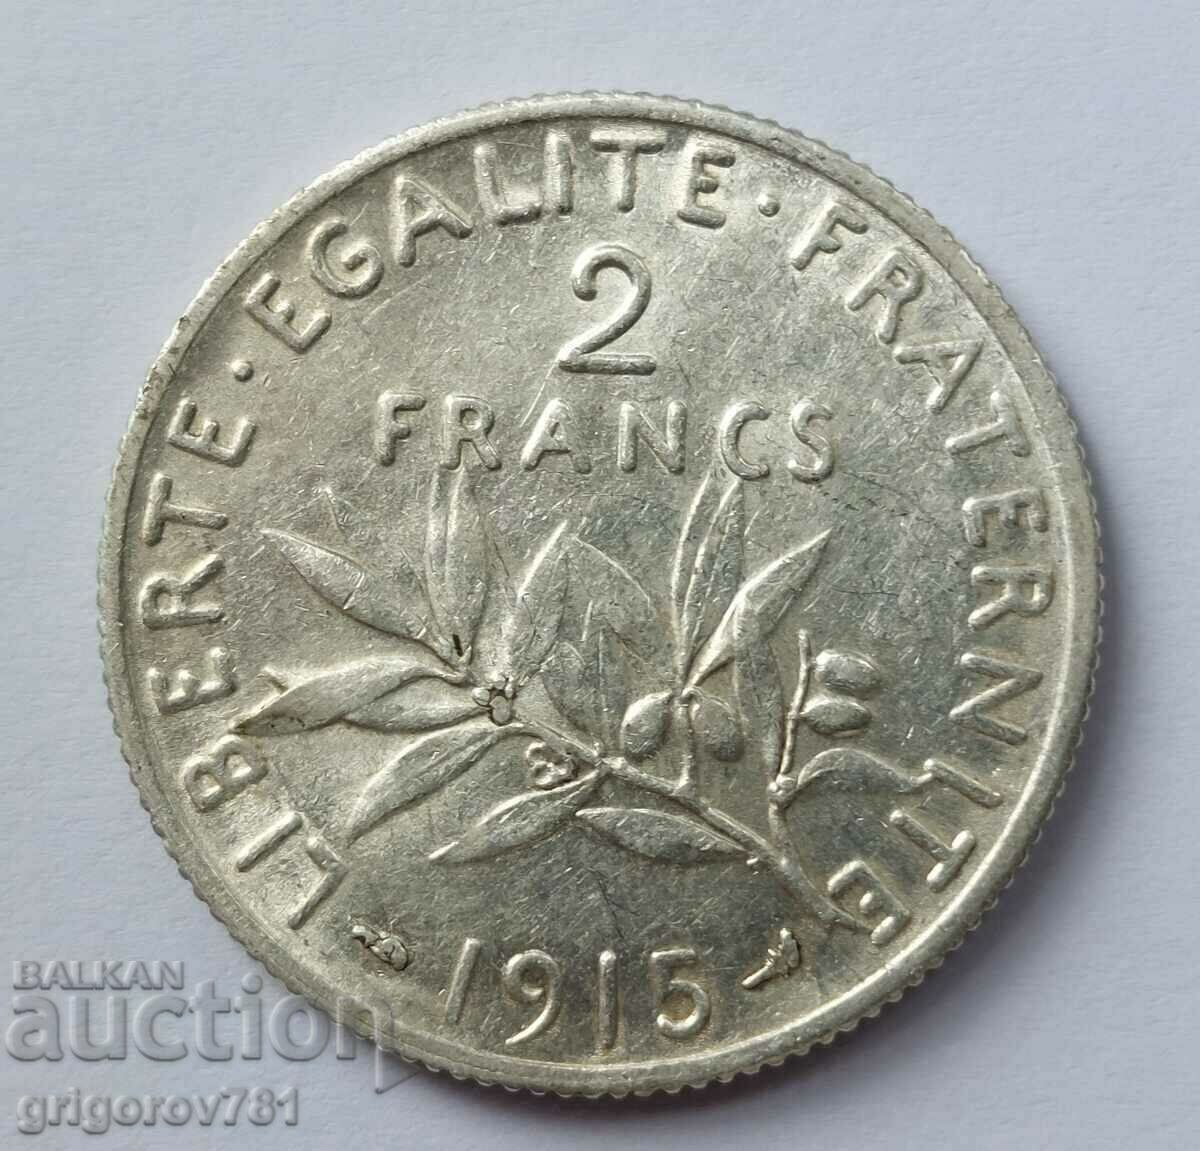 Ασημένιο 2 φράγκα Γαλλία 1915 - ασημένιο νόμισμα №1